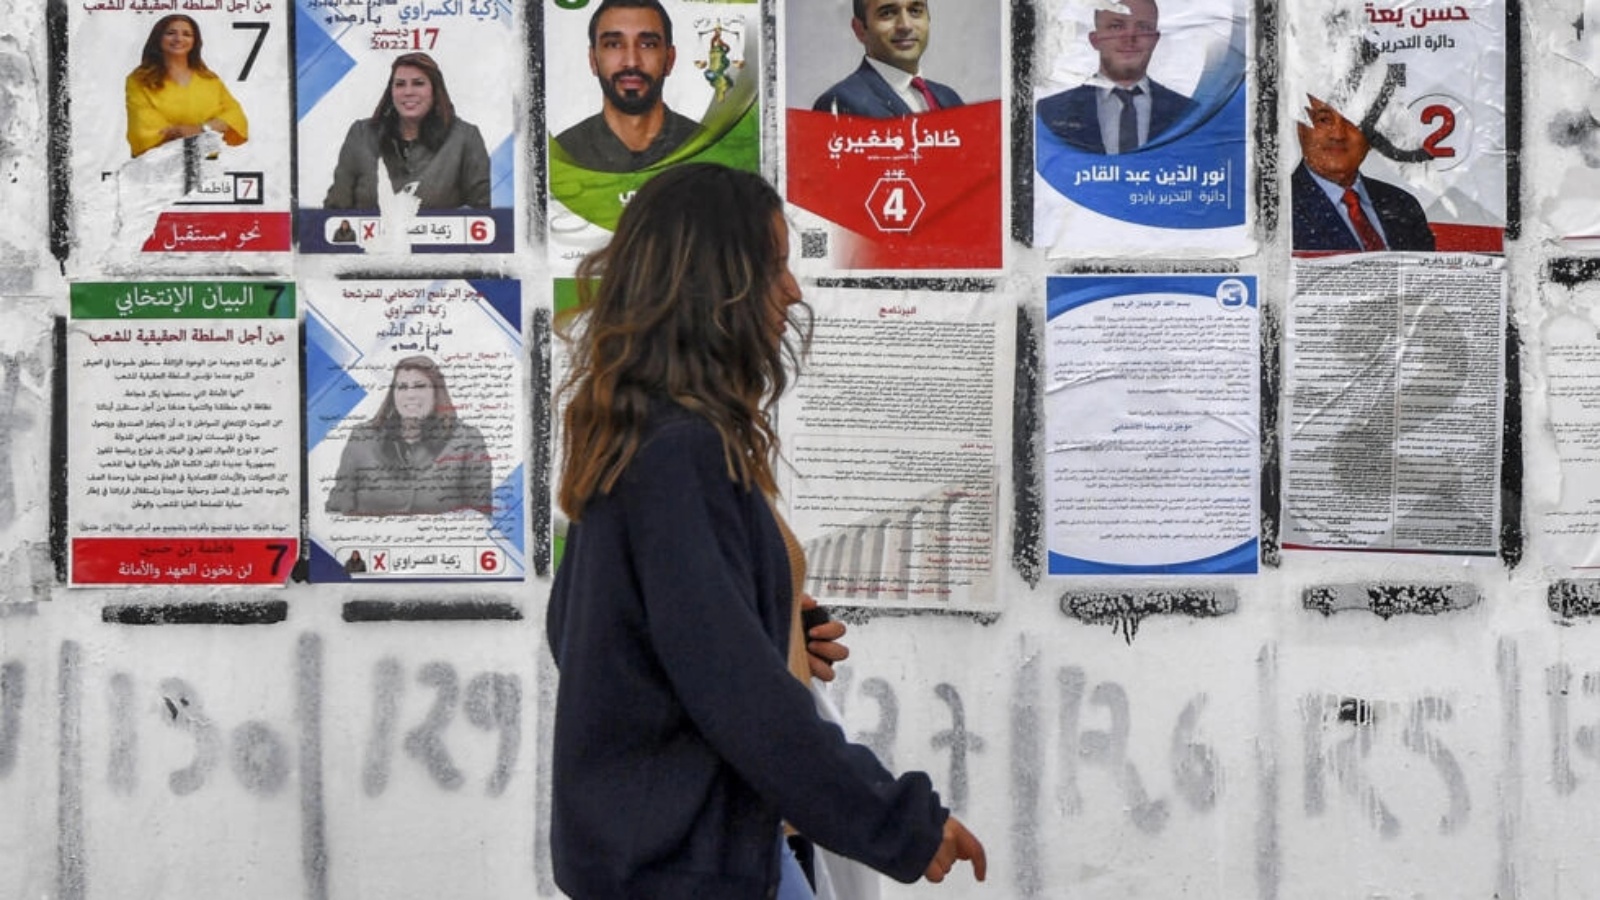 ملصقات انتخابية في العاصمة التونسية خلال حملة الاقتراع التشريعي في 14 ديسمبر 2022